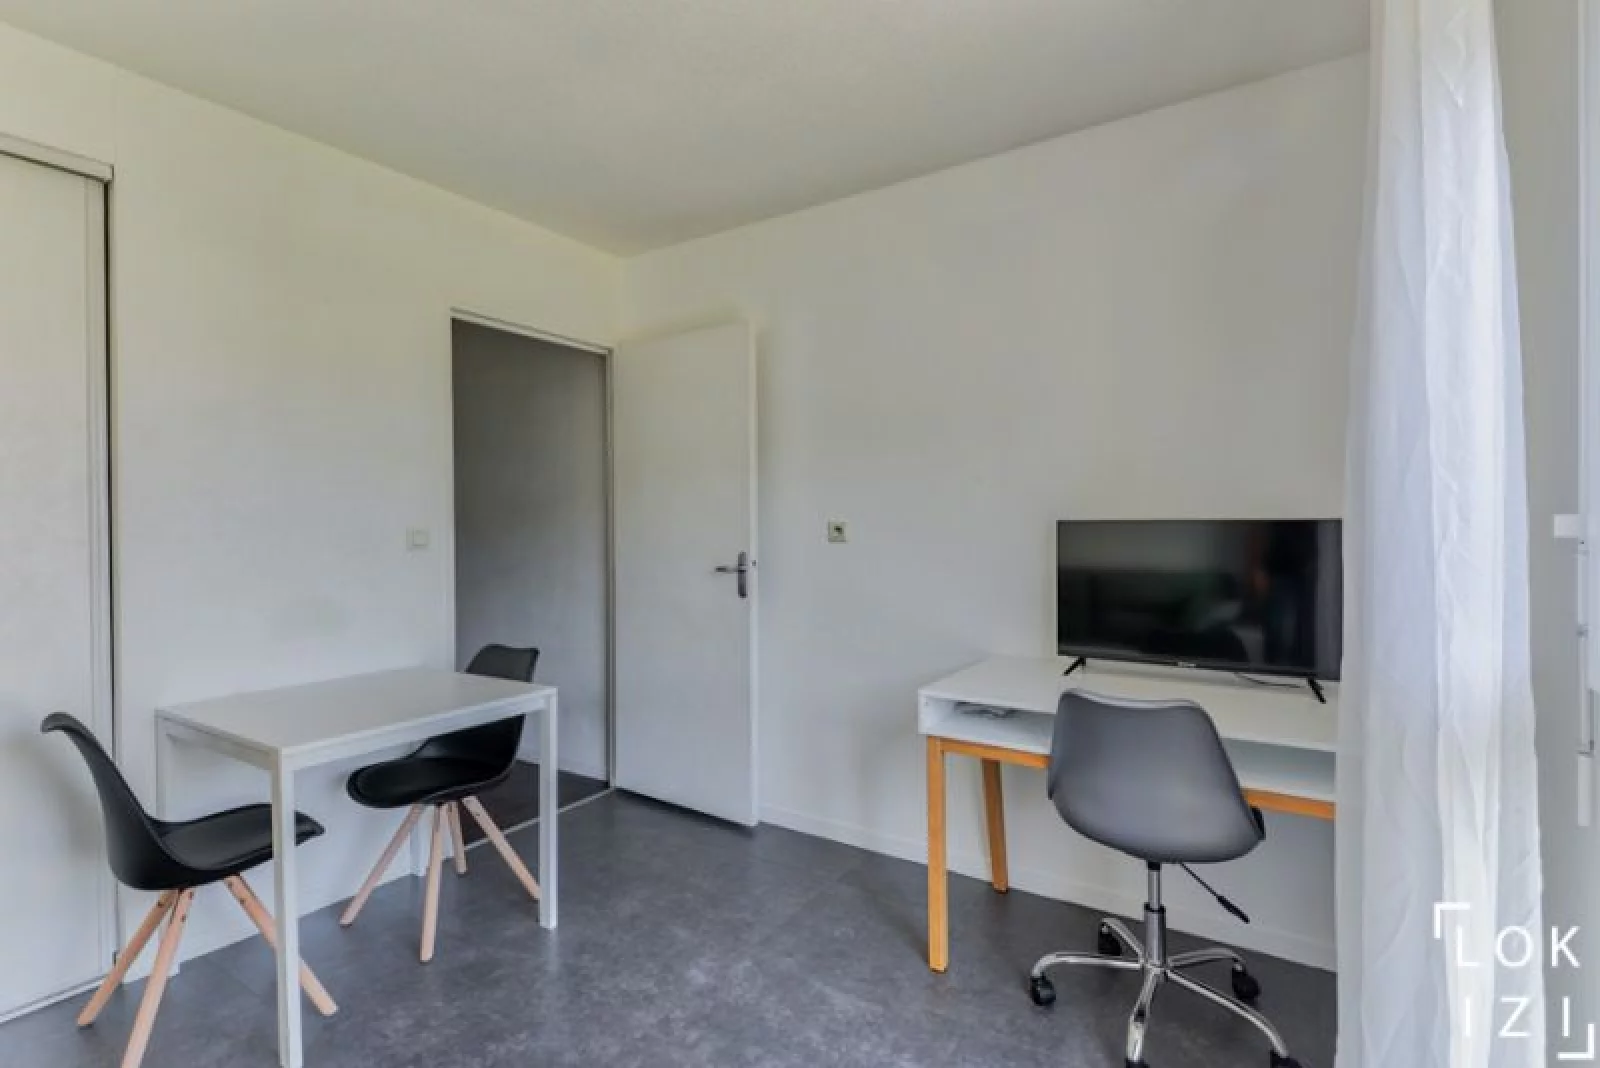 Location studio meublé 20m² (Paris est - Bry sur Marne)